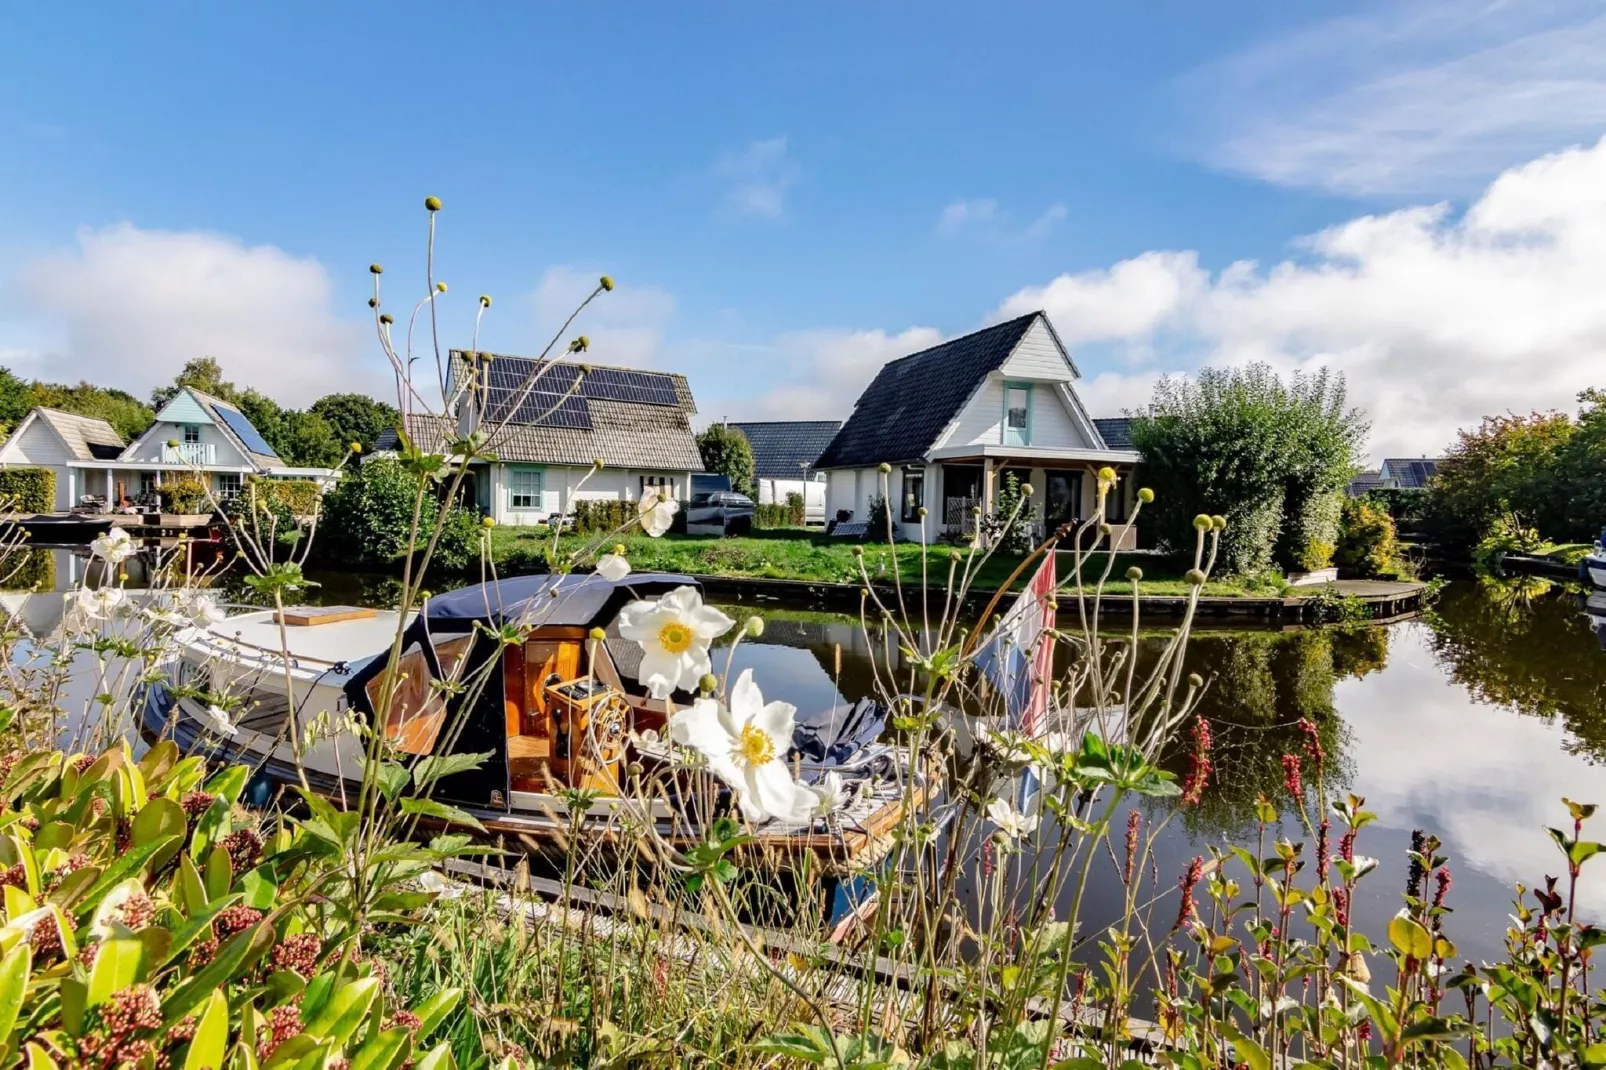 Groepswoning 2-11 personen aan het Zuidlaardermeer in Groningen met sloep optie-Uitzicht zomer